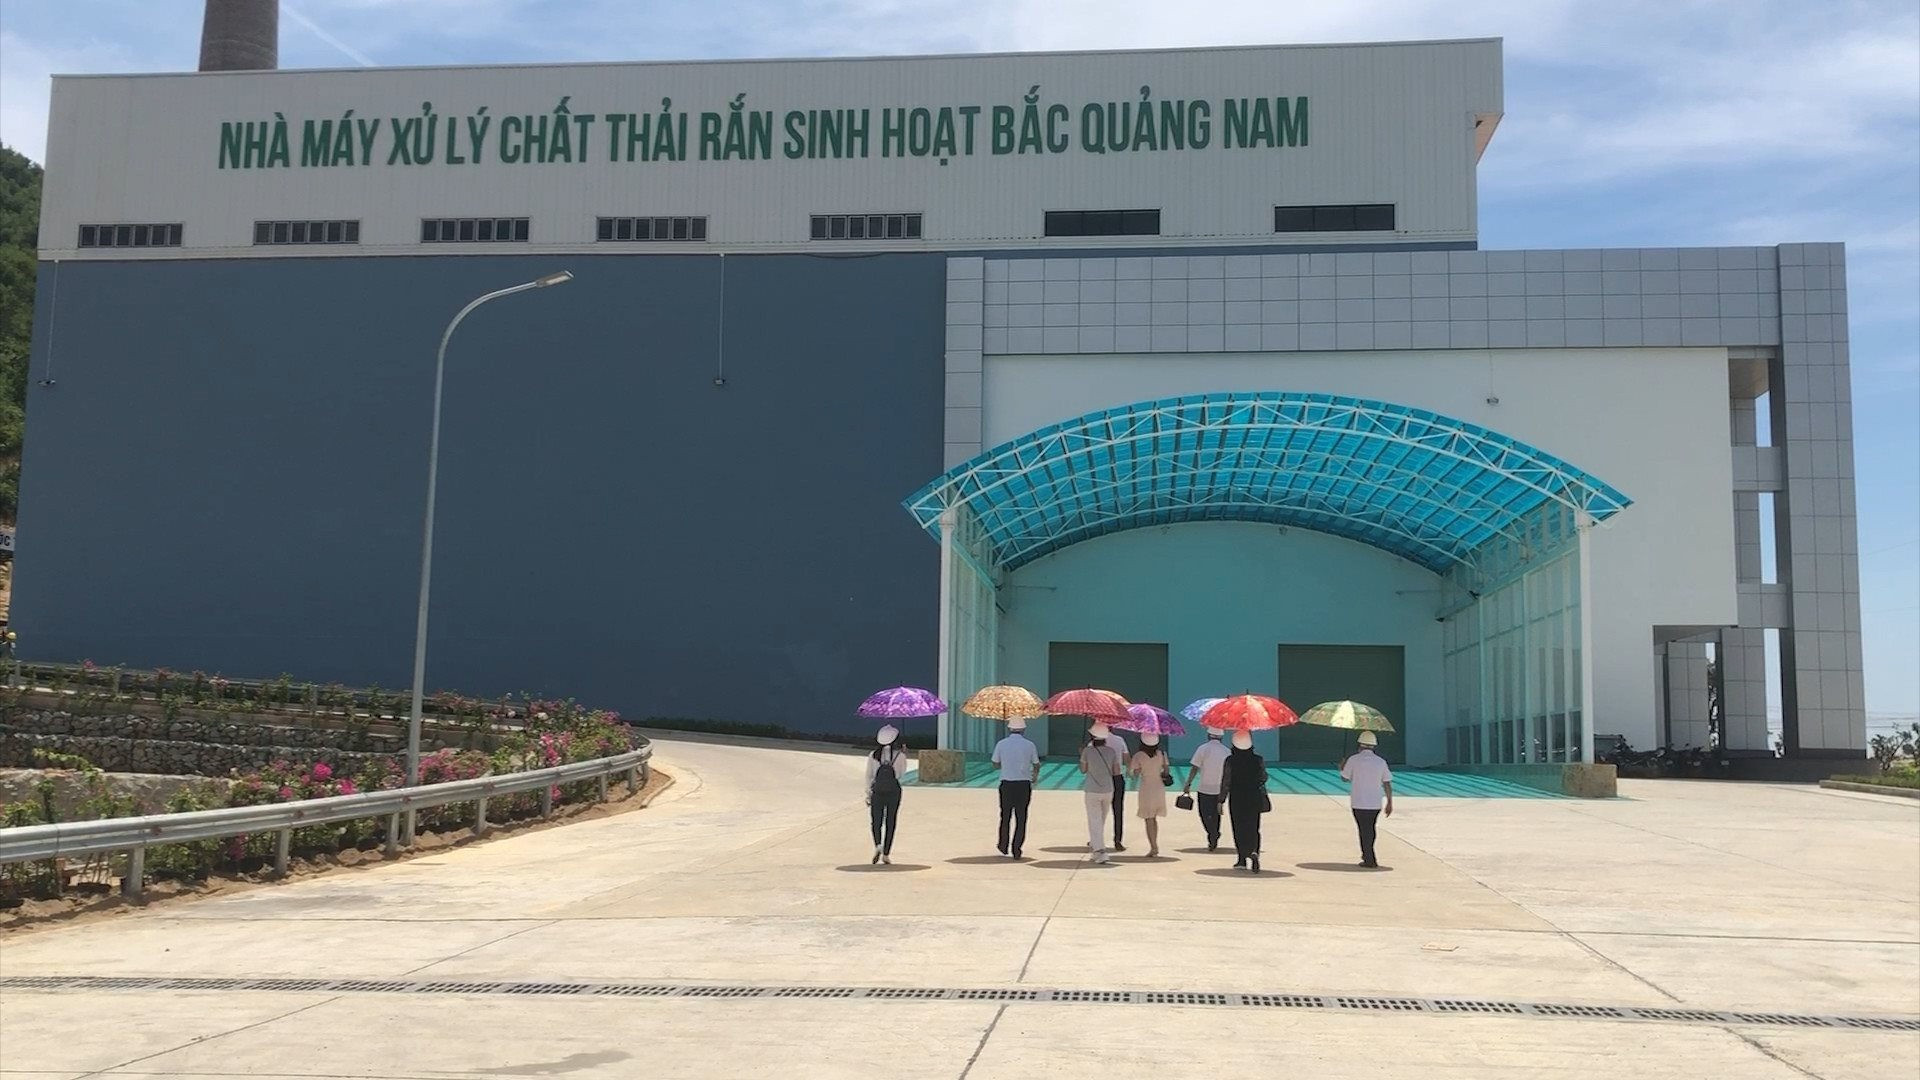 Nhà máy xử lý chất thải rắn sinh hoạt Bắc Quảng Nam tại thị trấn Ái Nghĩa (Đại Lộc) bắt đầu tiếp nhận rác từ tháng 7.2022